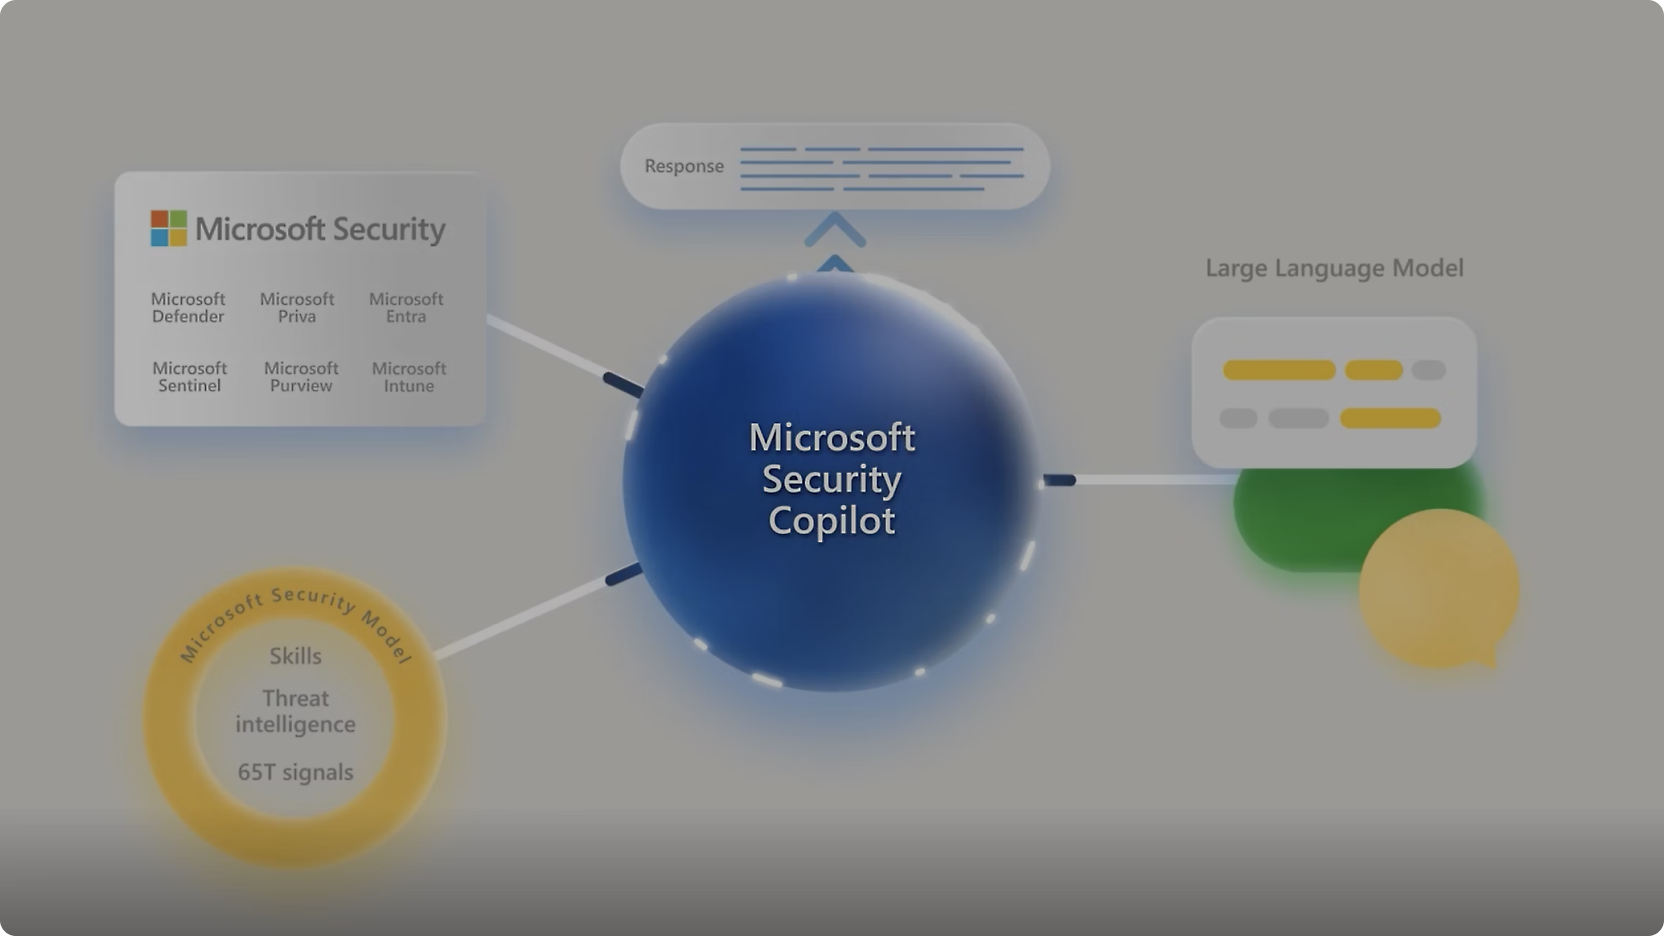 Diagram memperlihatkan "Microsoft Security Copilot" di tengah dengan koneksi ke berbagai alat keamanan microsoft